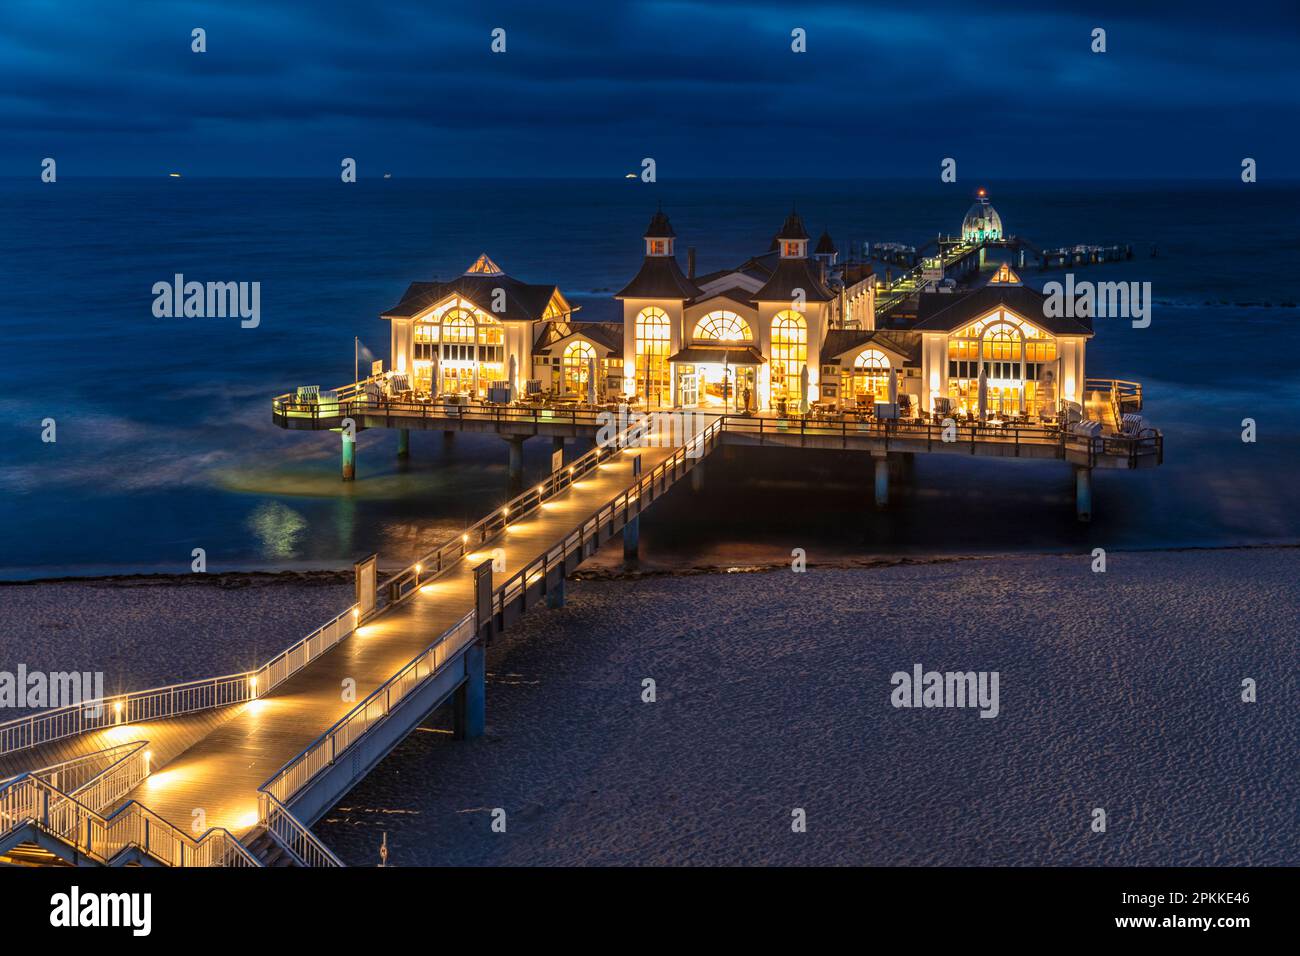 Pier am Strand von Sellin, Insel Ruegen, Ostsee, Mecklenburg-Vorpommern, Deutschland, Europa Stockfoto